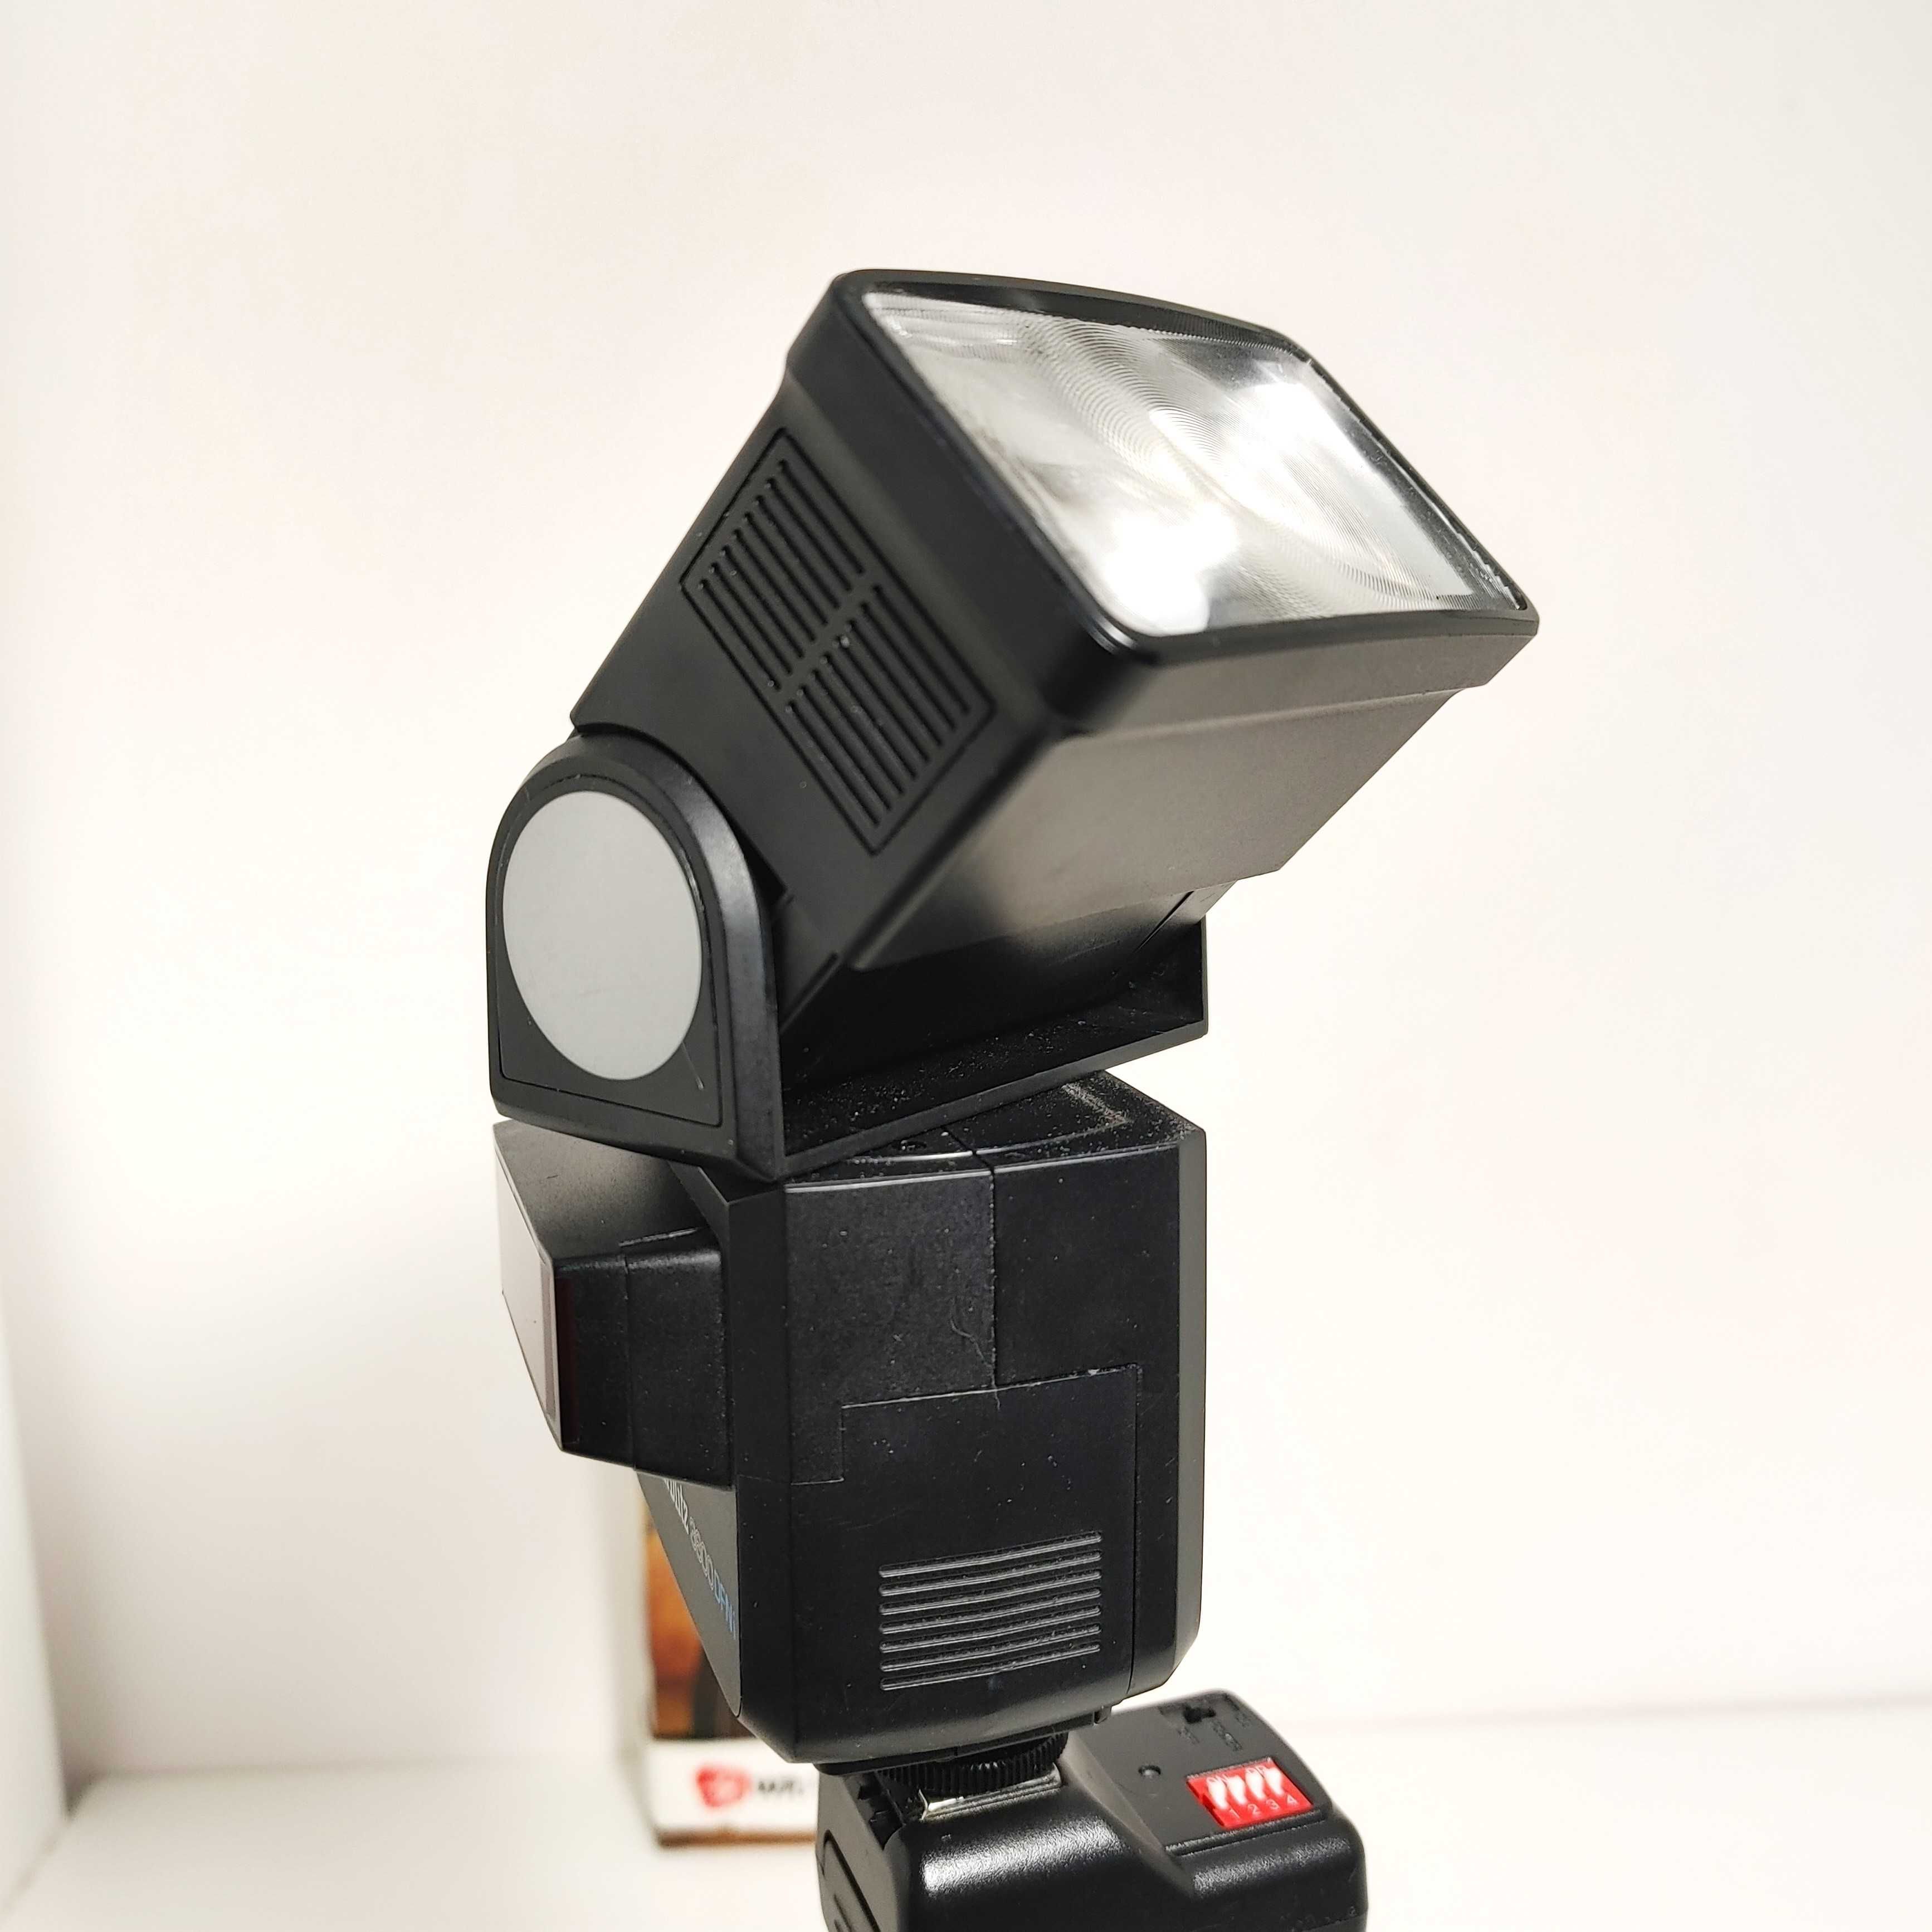 Lampa błyskowa dedykowana do aparatów NIKON F -  Starblitz 3600 SFNi